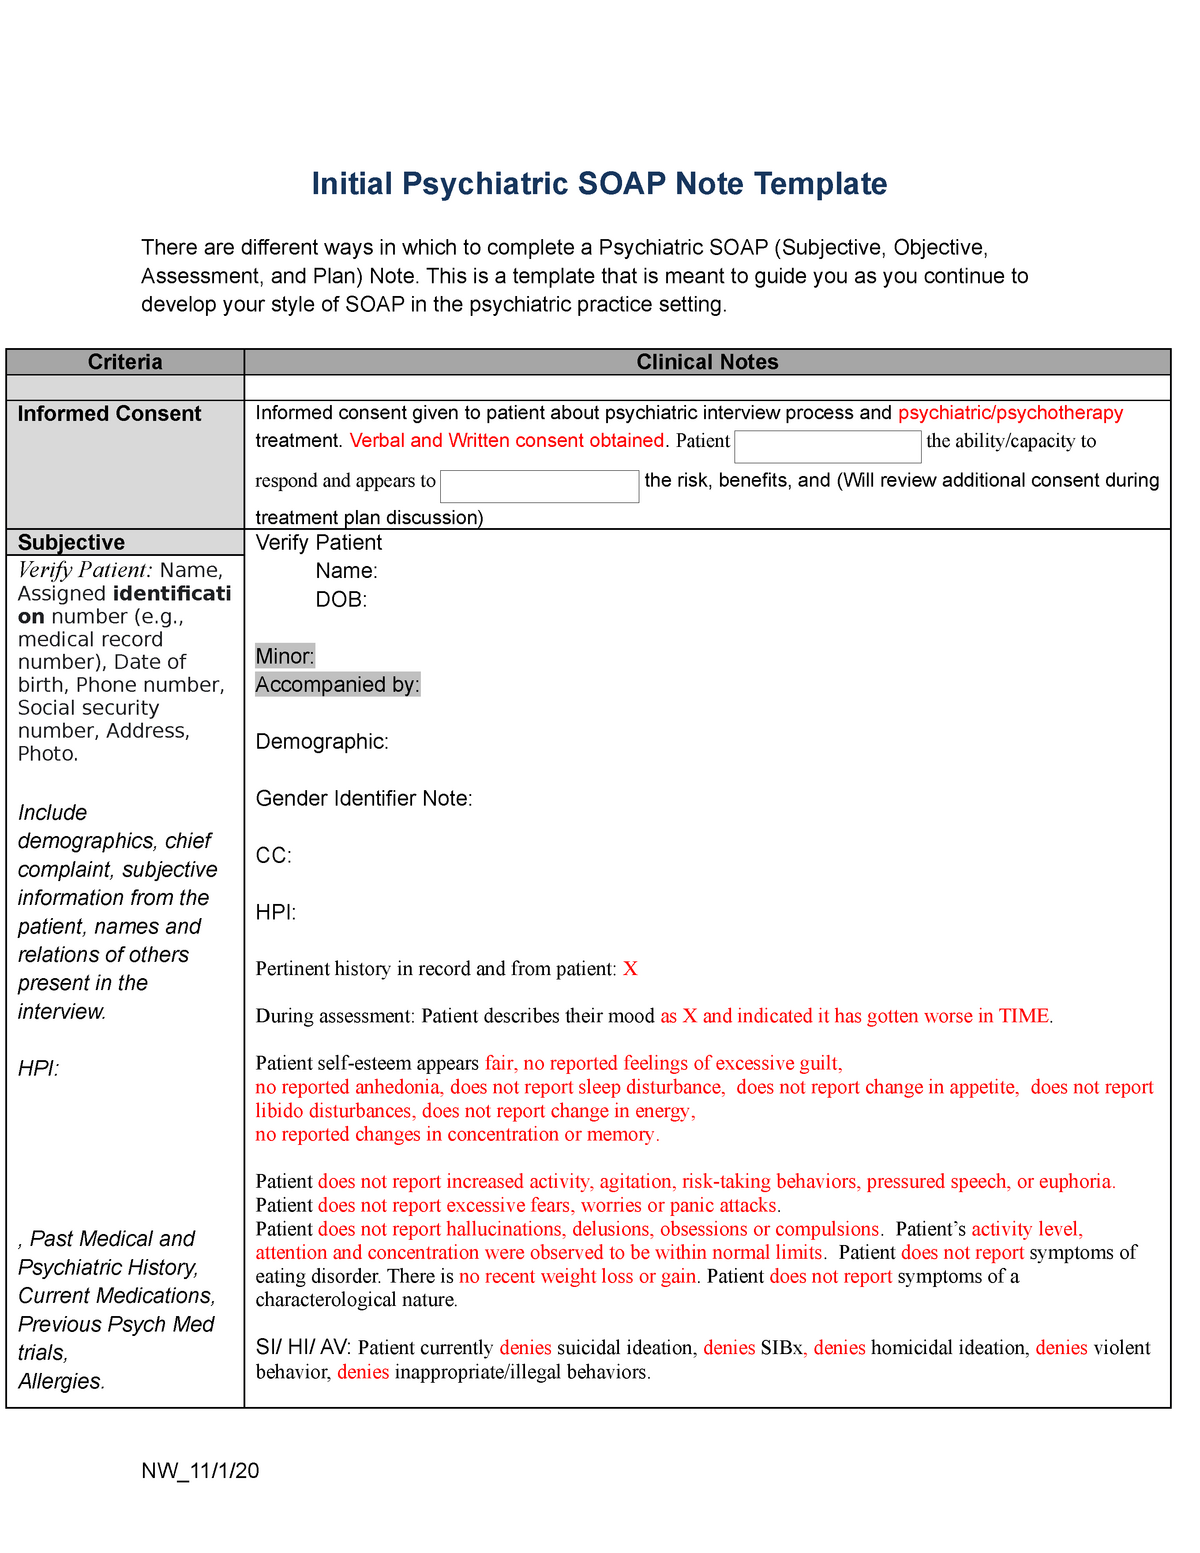 NU20 Initial Psychiatric SOAP Note Template - Initial Psychiatric Intended For Psychiatry Note Template